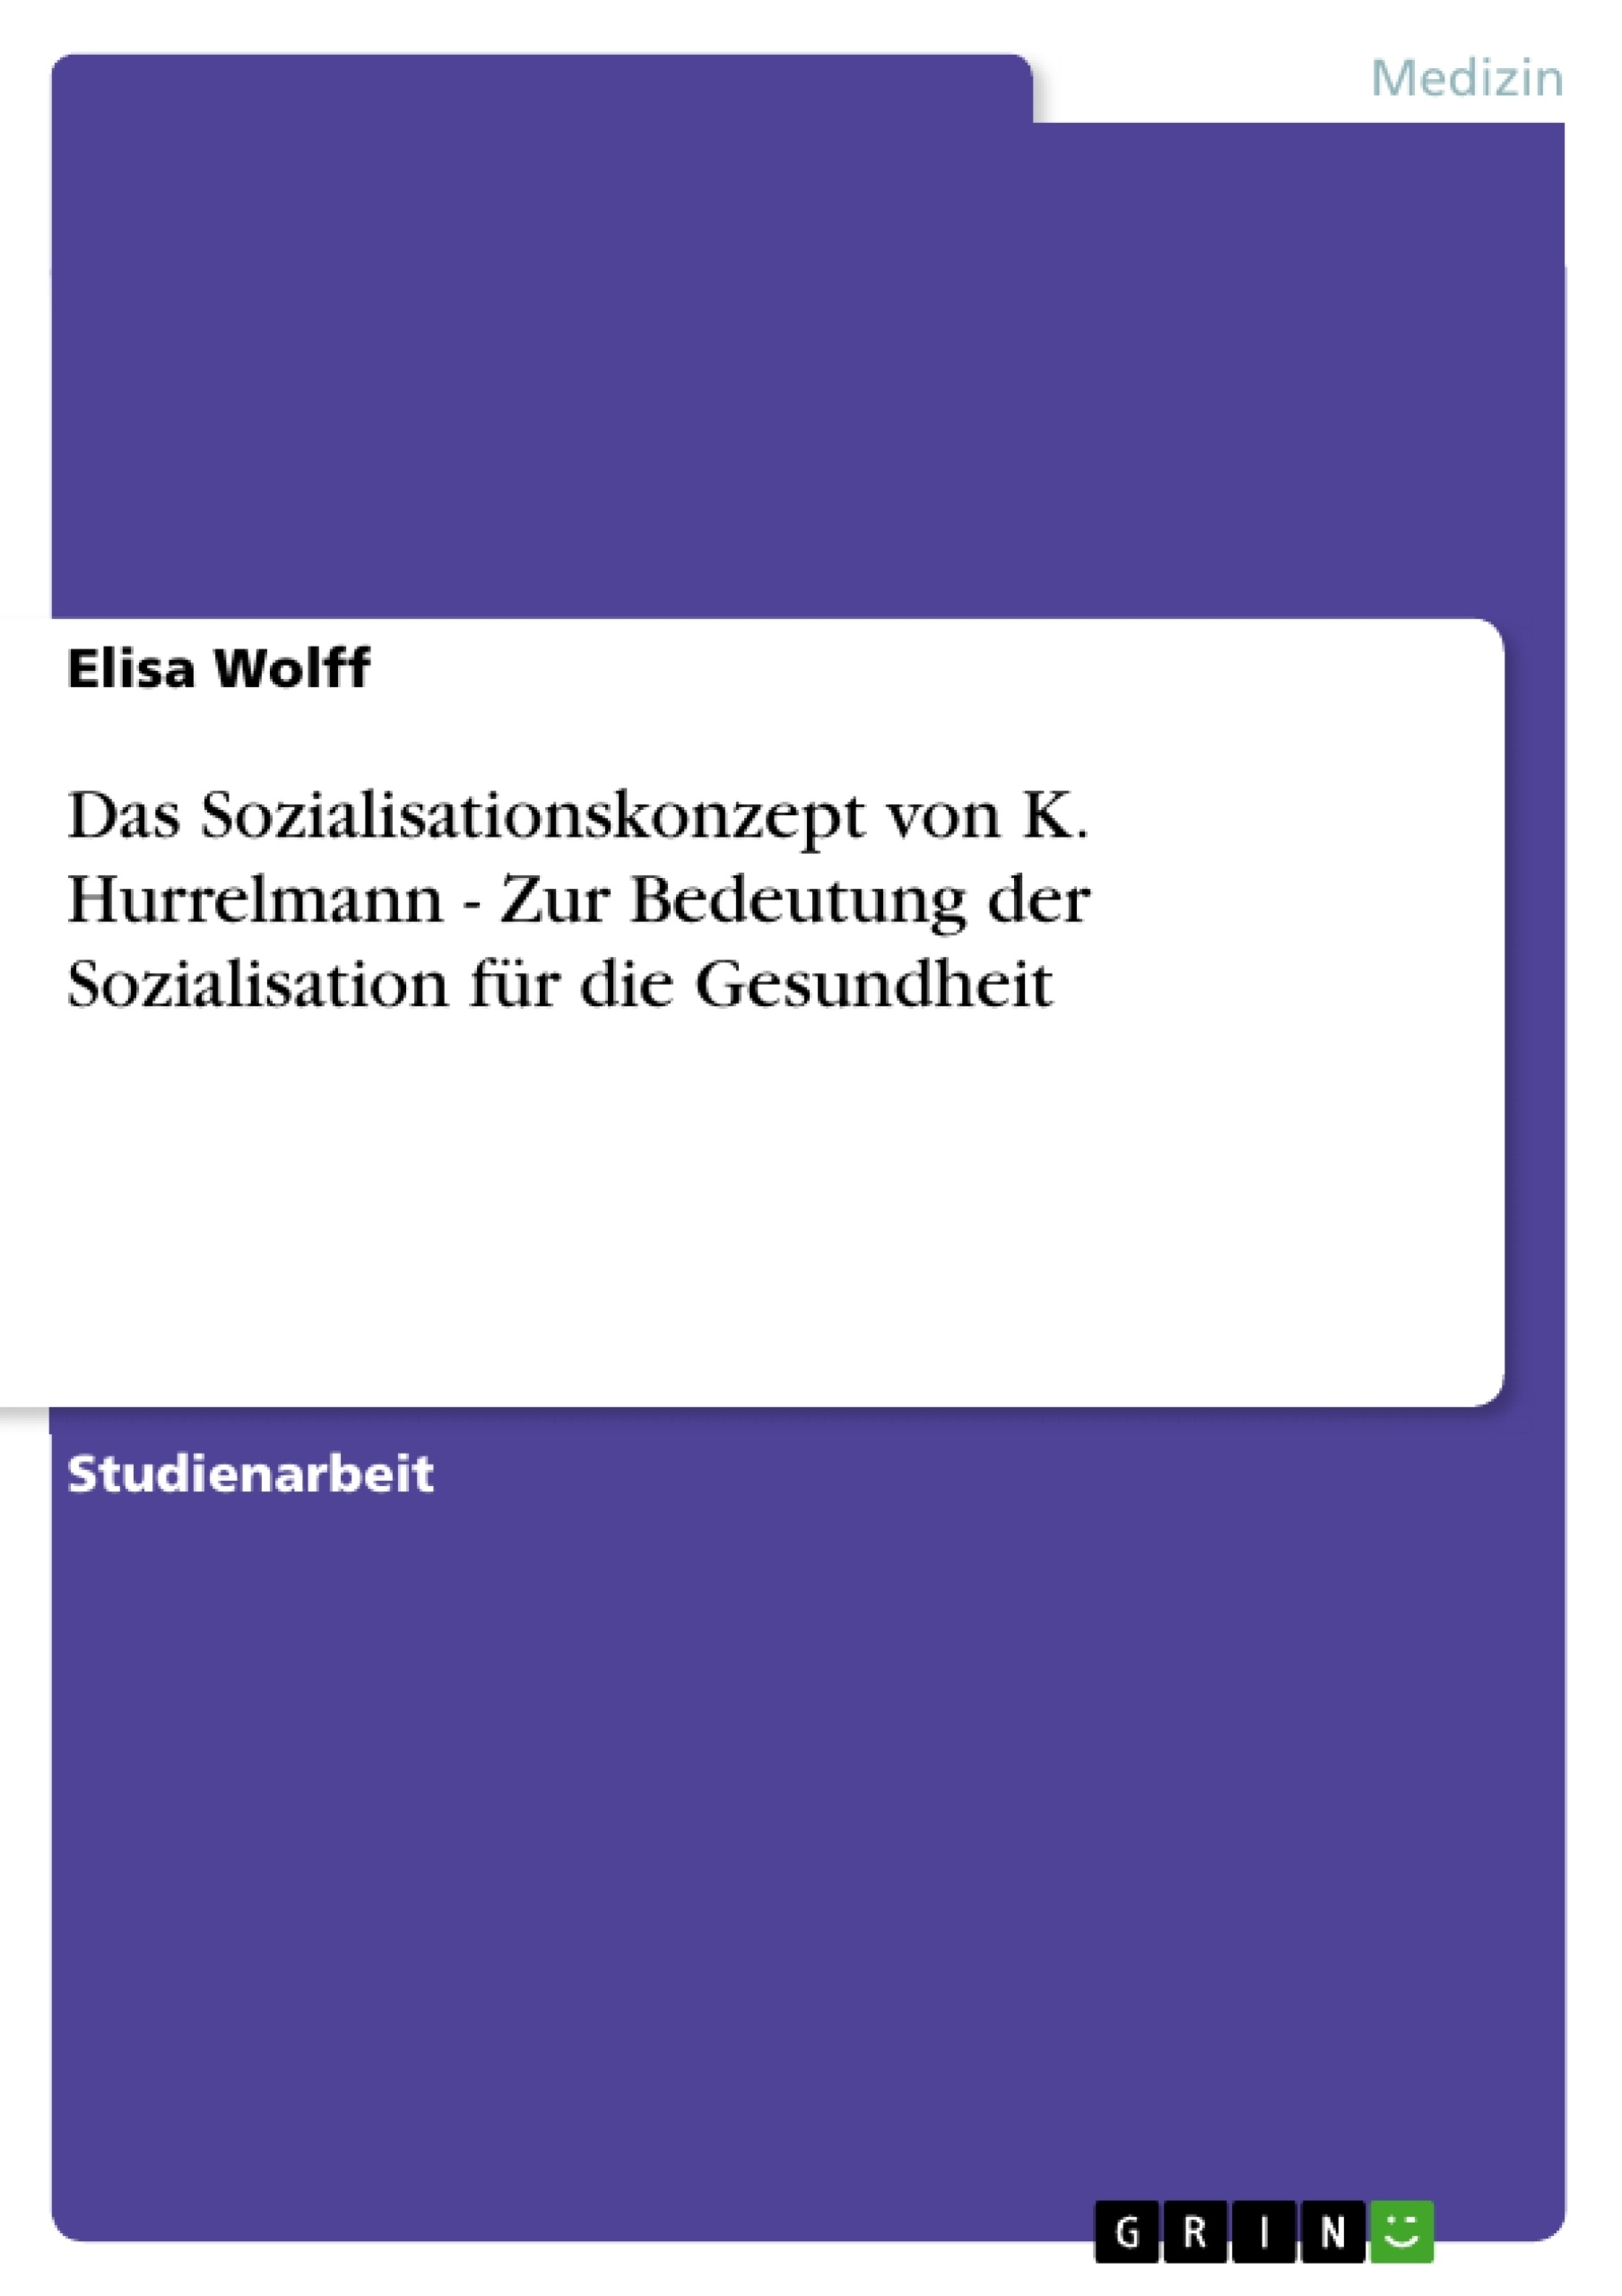 Título: Das Sozialisationskonzept von K. Hurrelmann - Zur Bedeutung der Sozialisation für die Gesundheit